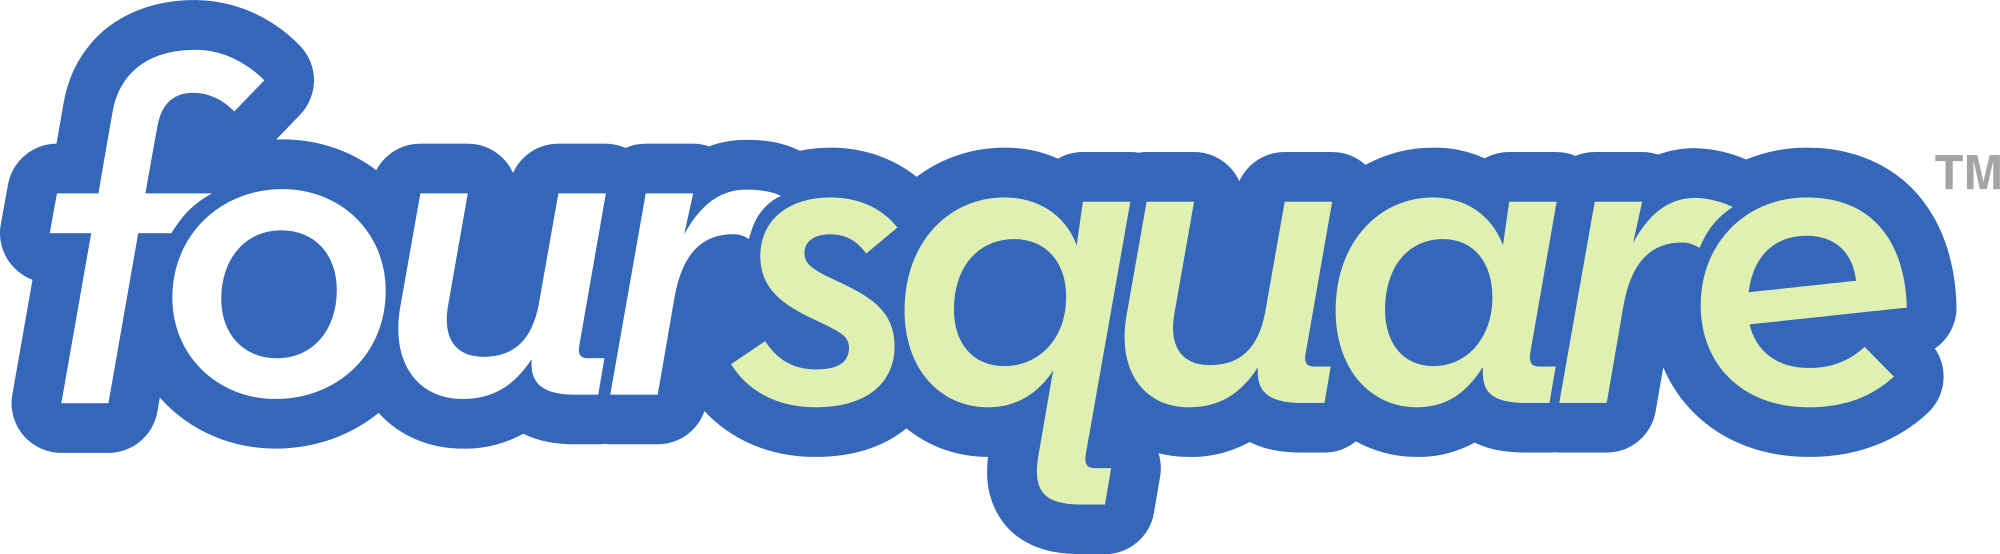 Foursquare Logo - Foursquare logo (1).svg